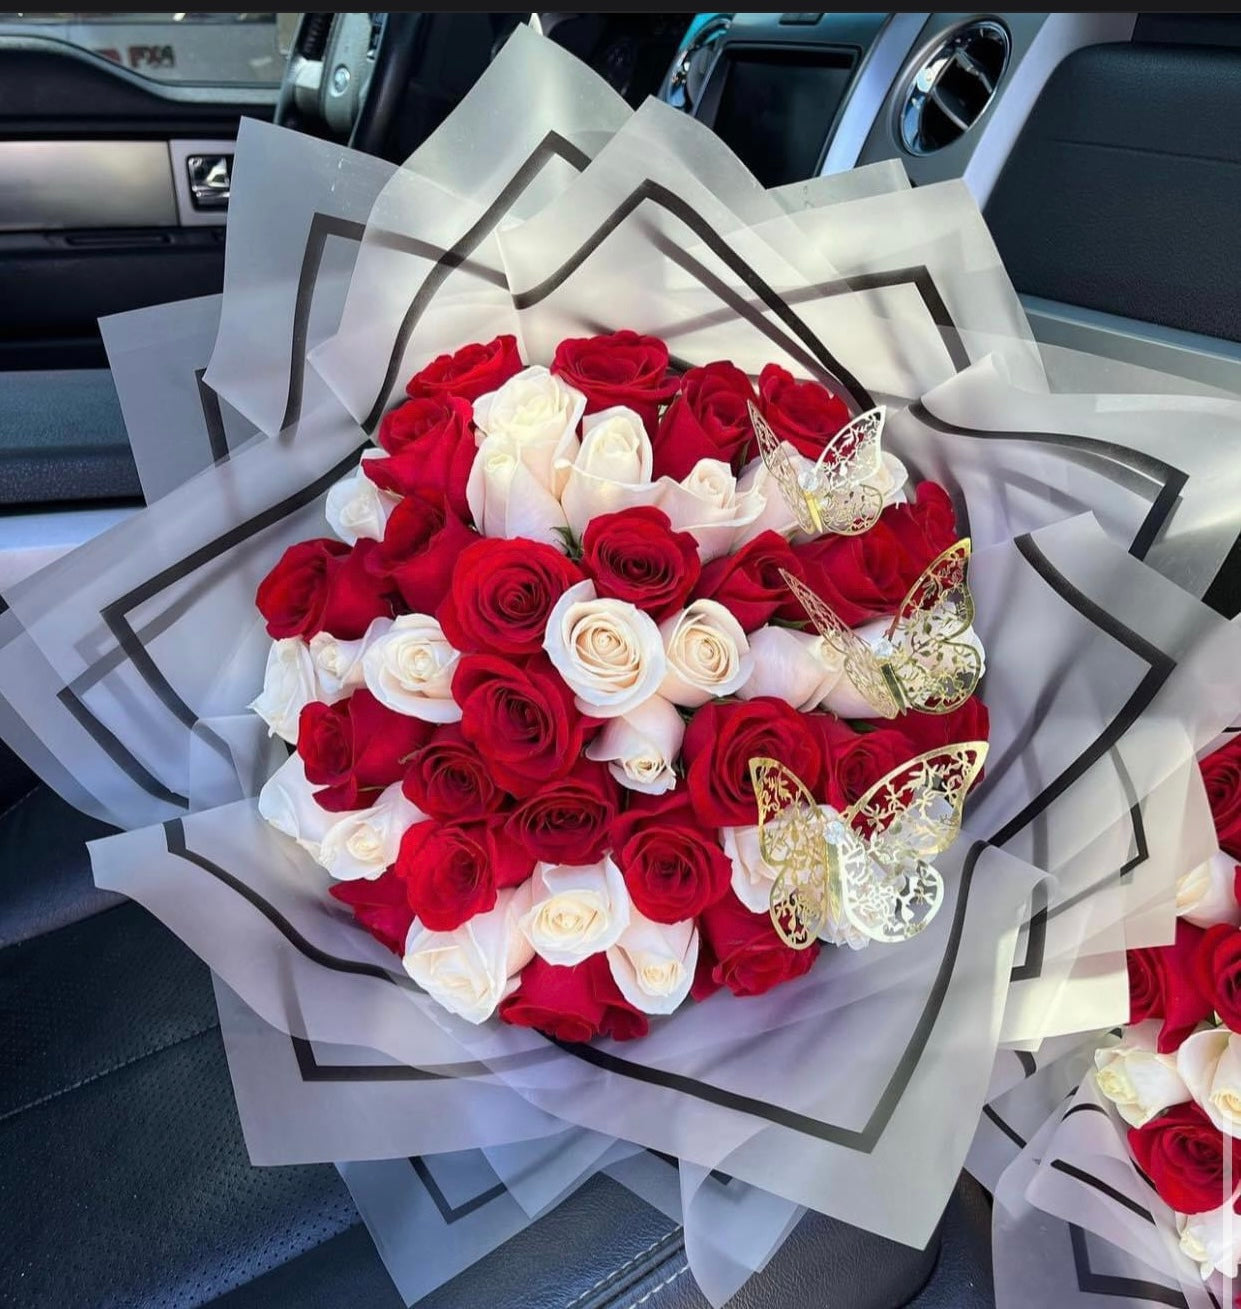 Miami Heat (*50 Roses*) – Luxury Roses Bouquet